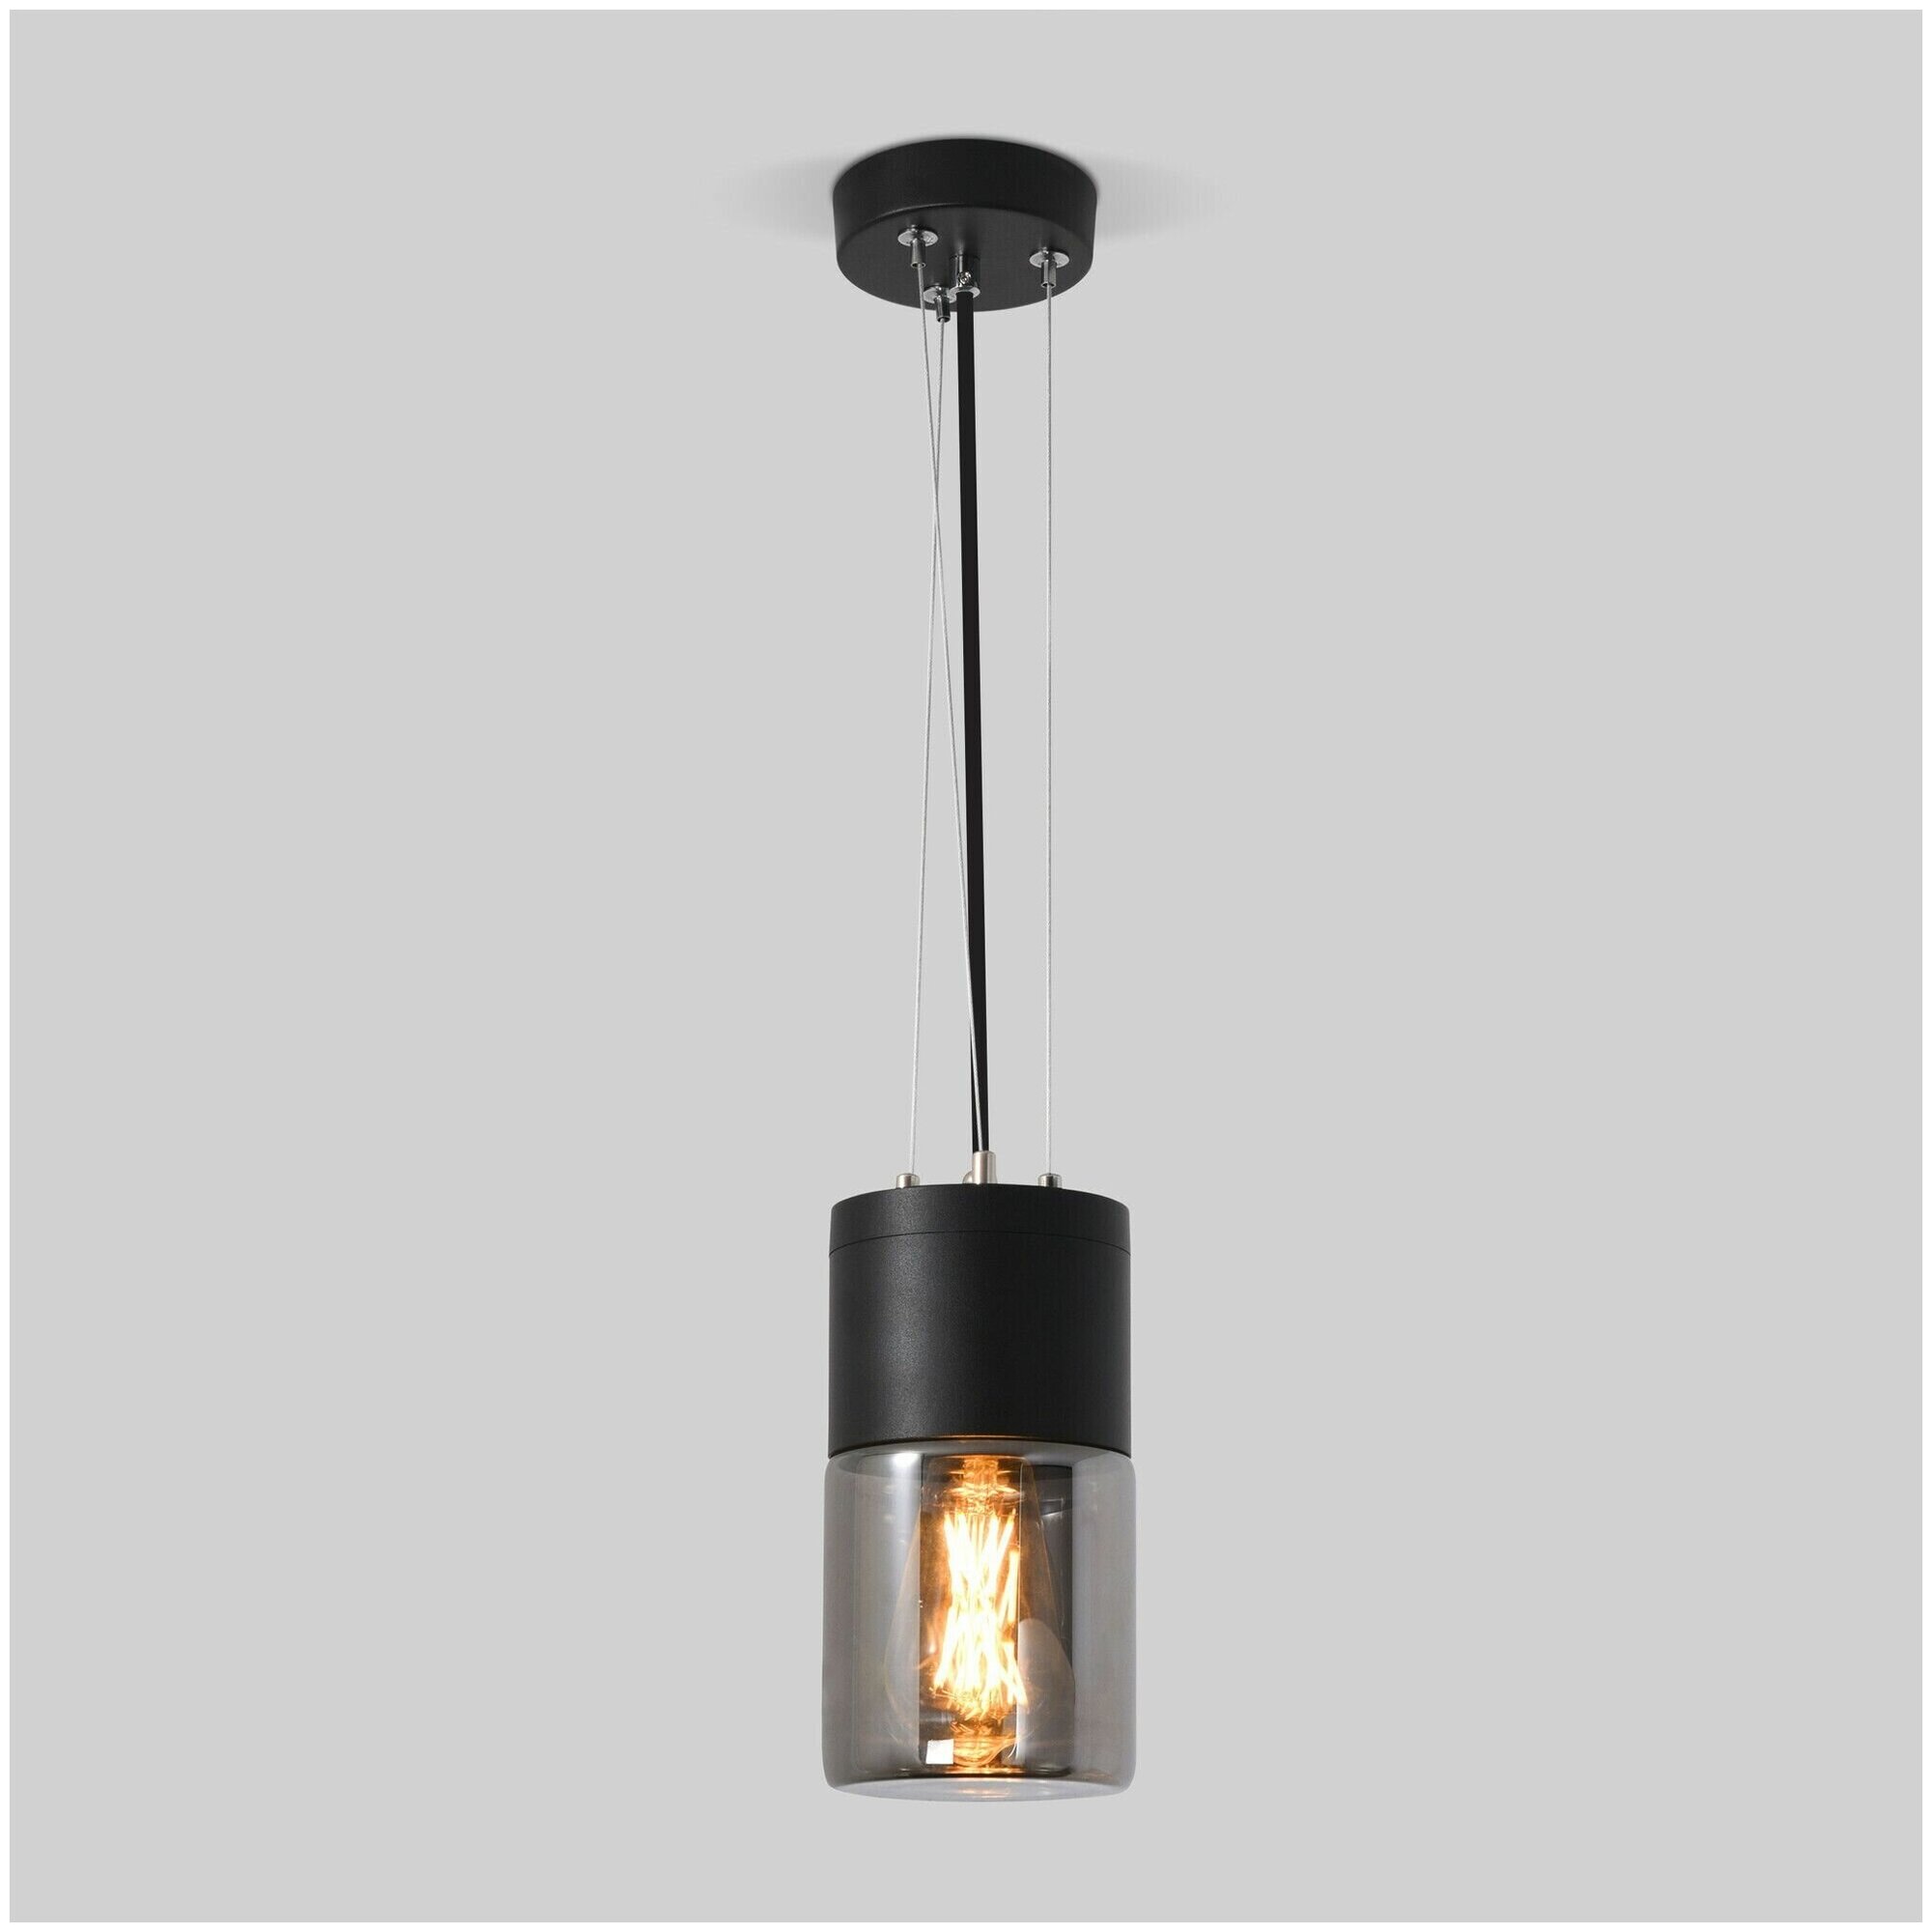 Уличный подвесной светильник Elektrostandard Roil 35125/H цвет чёрный, IP54